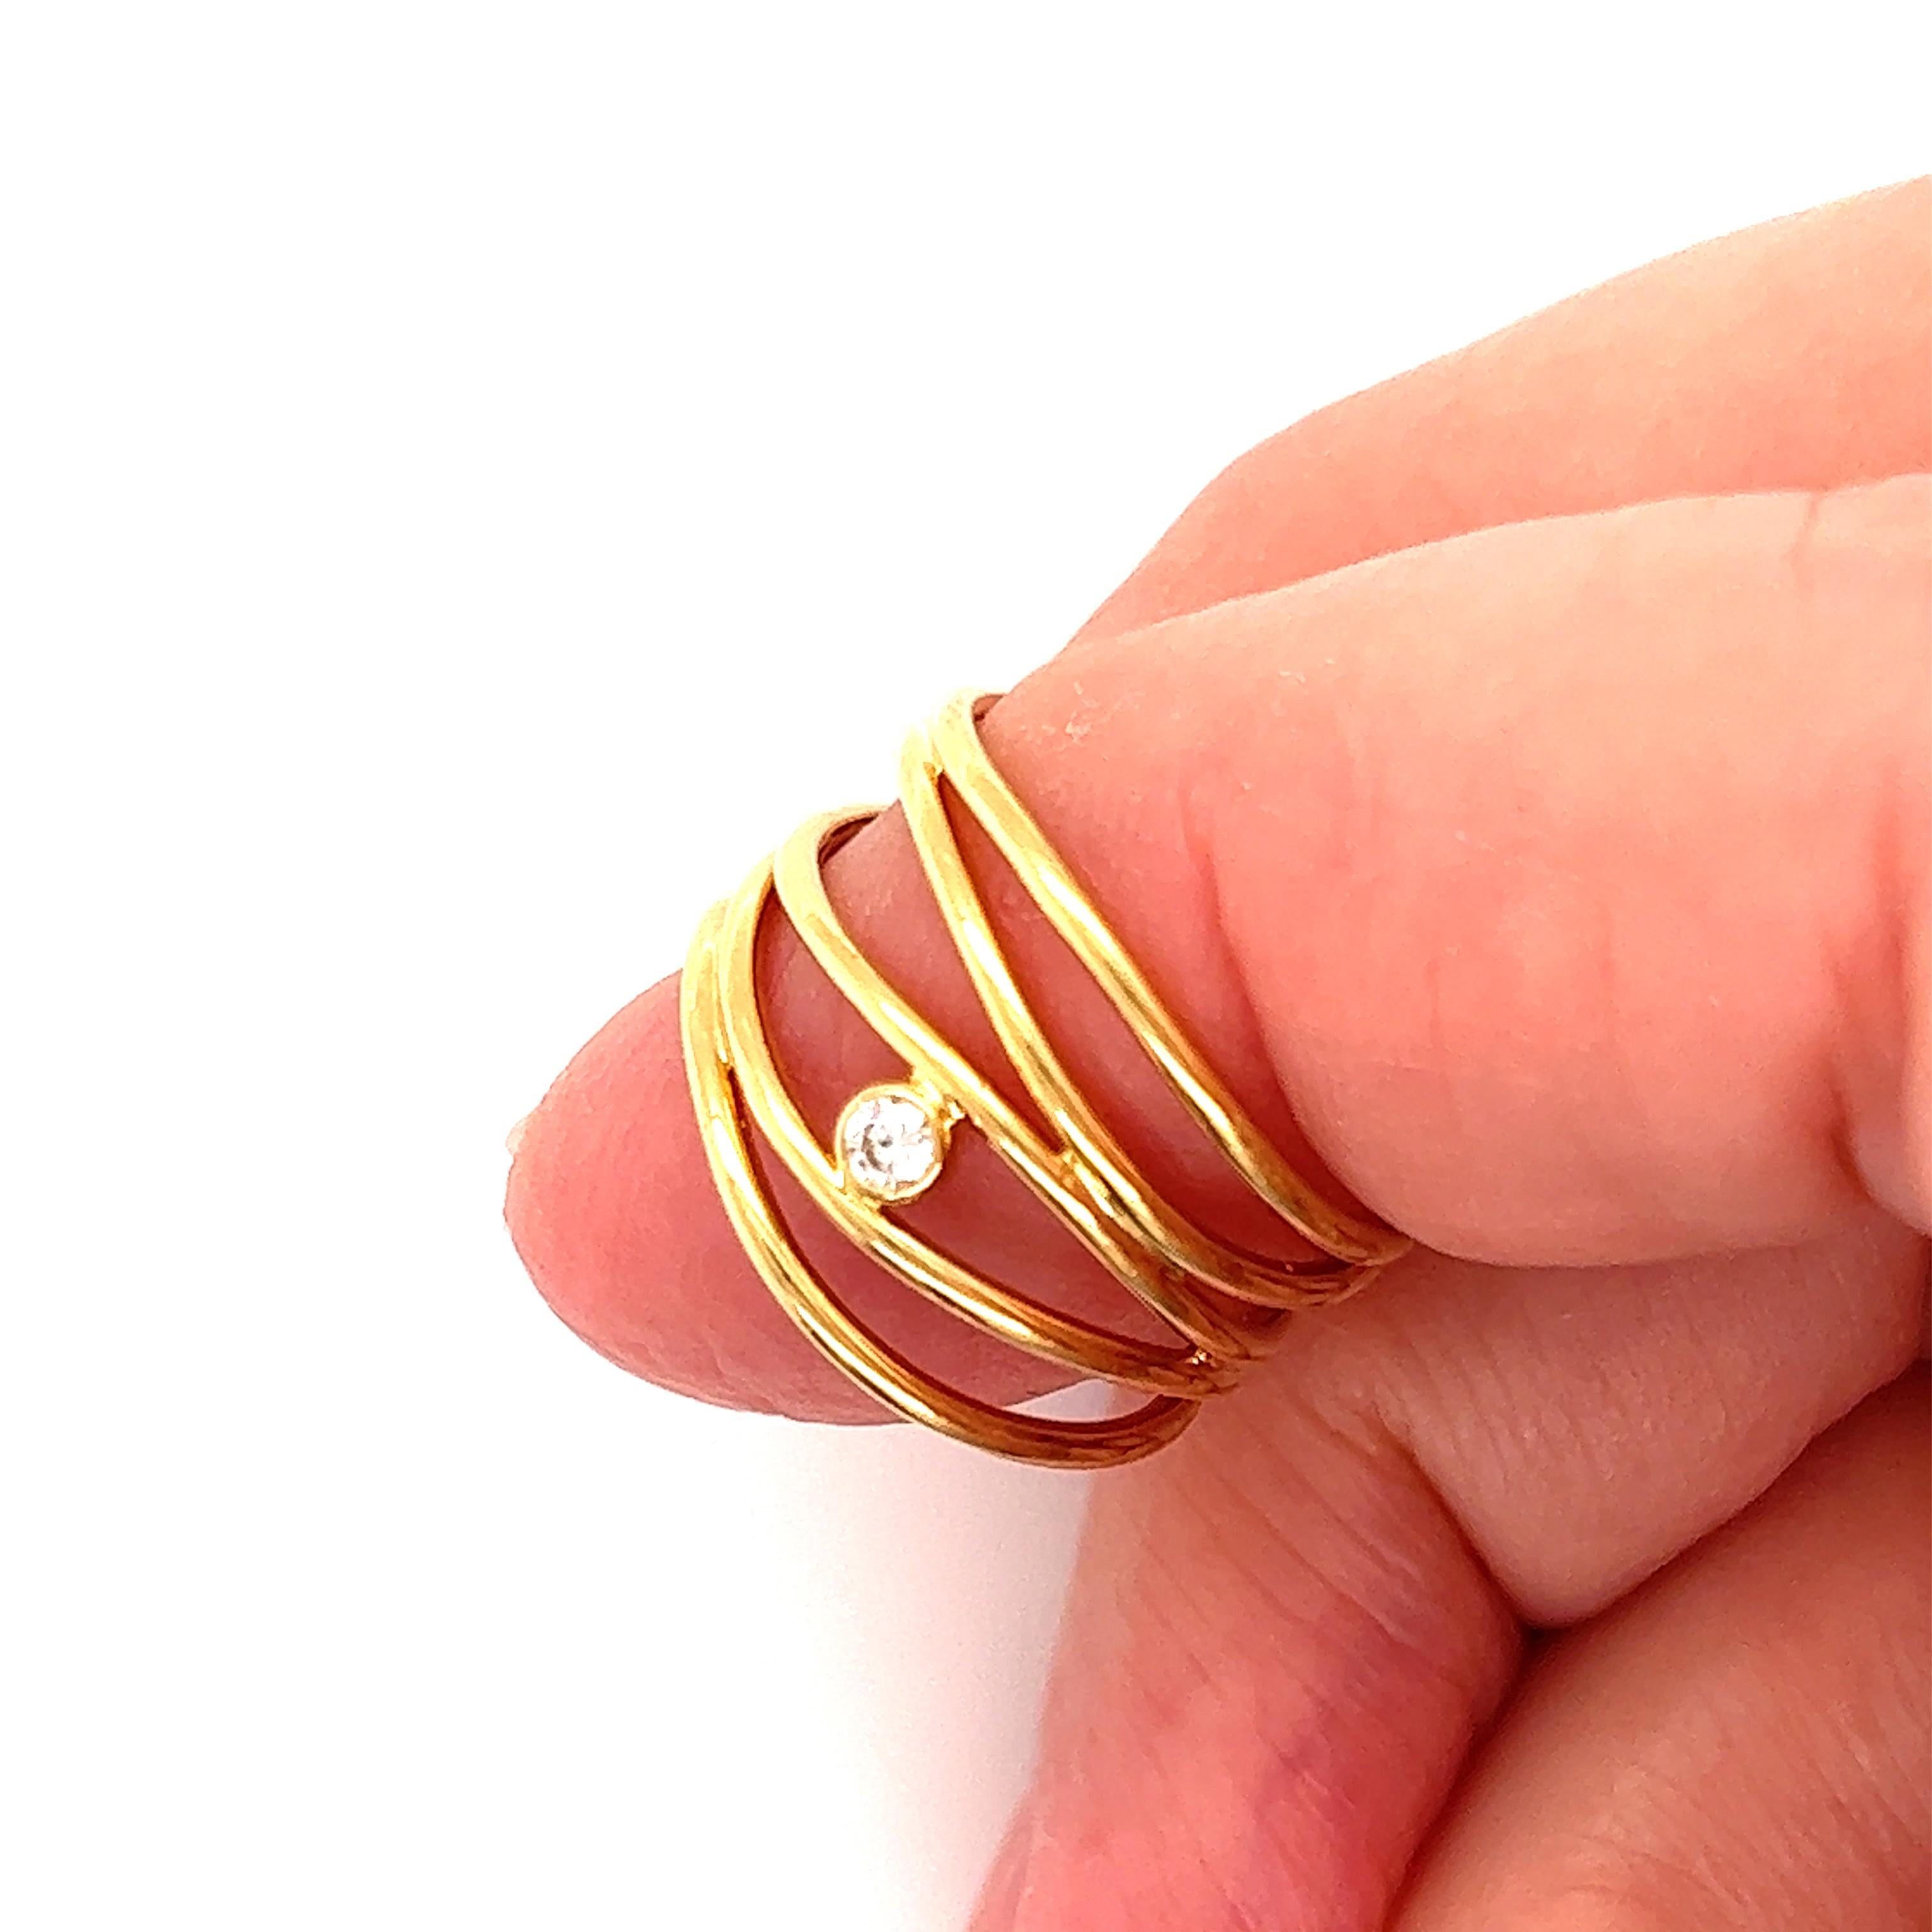 Dieser elegante, authentische Ring von Tiffany & Co. ist ein Werk der Designerin Elsa Peretti aus ihrer Wire Wave Collection. Es ist aus 18 Karat Gelbgold mit 5 feinen Draht-Band in einem Draht-Stil und hat eine 5 Punkte Lünette gesetzt